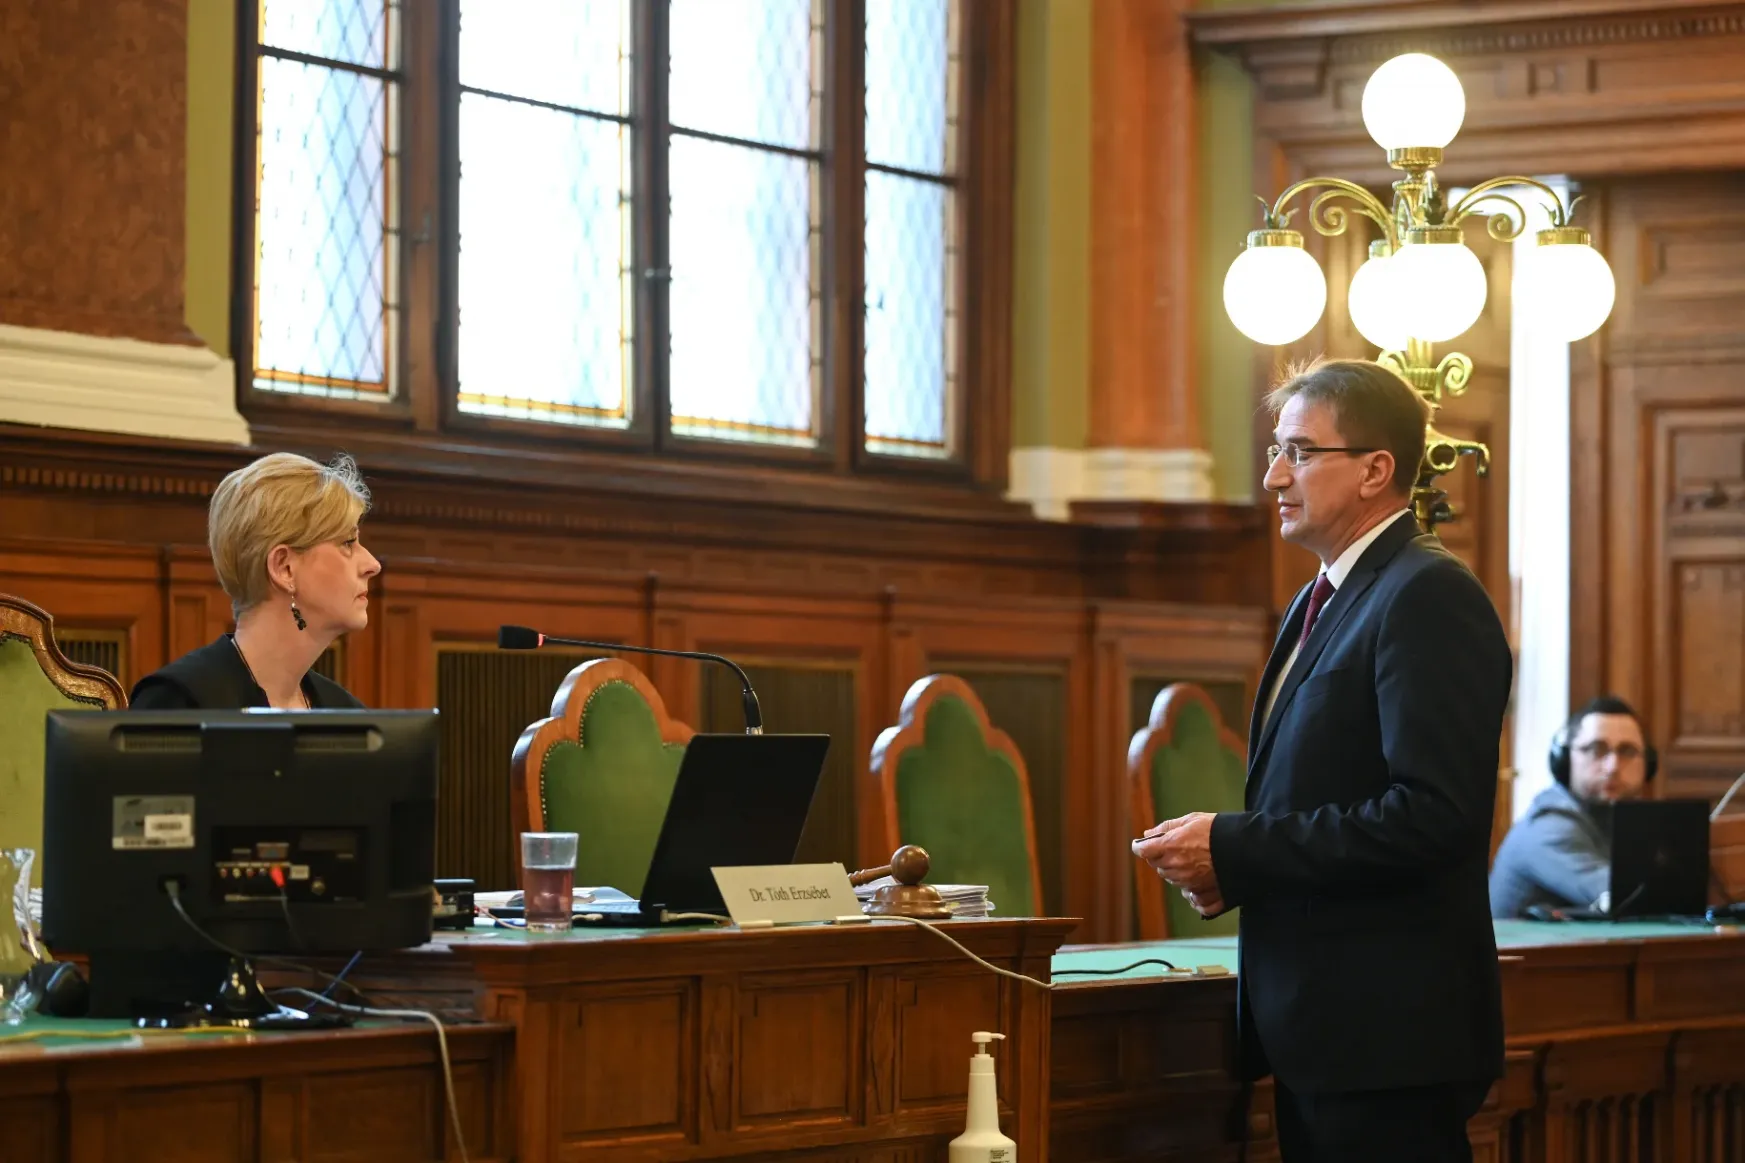 Schadl bilincsben, Völner a kezét tördelve ült a bíróságon